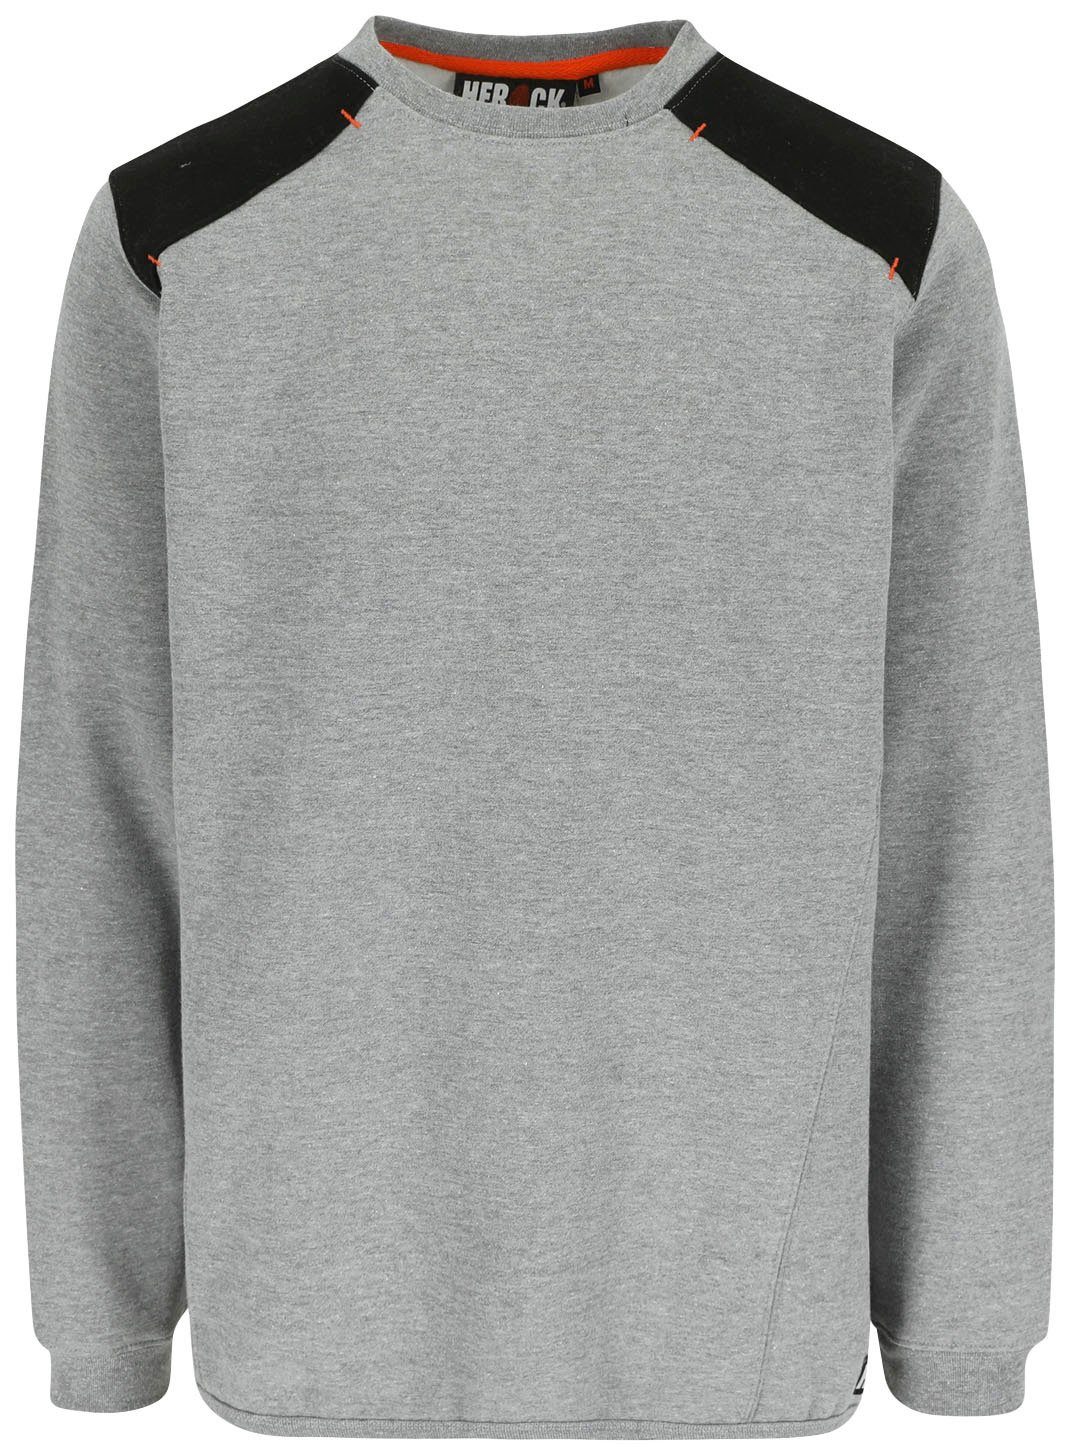 grau Herock Sweater Artemis Kragen Rundhalspullover Rippstrick - - Rückenteil weiches Langes Tragegefühl